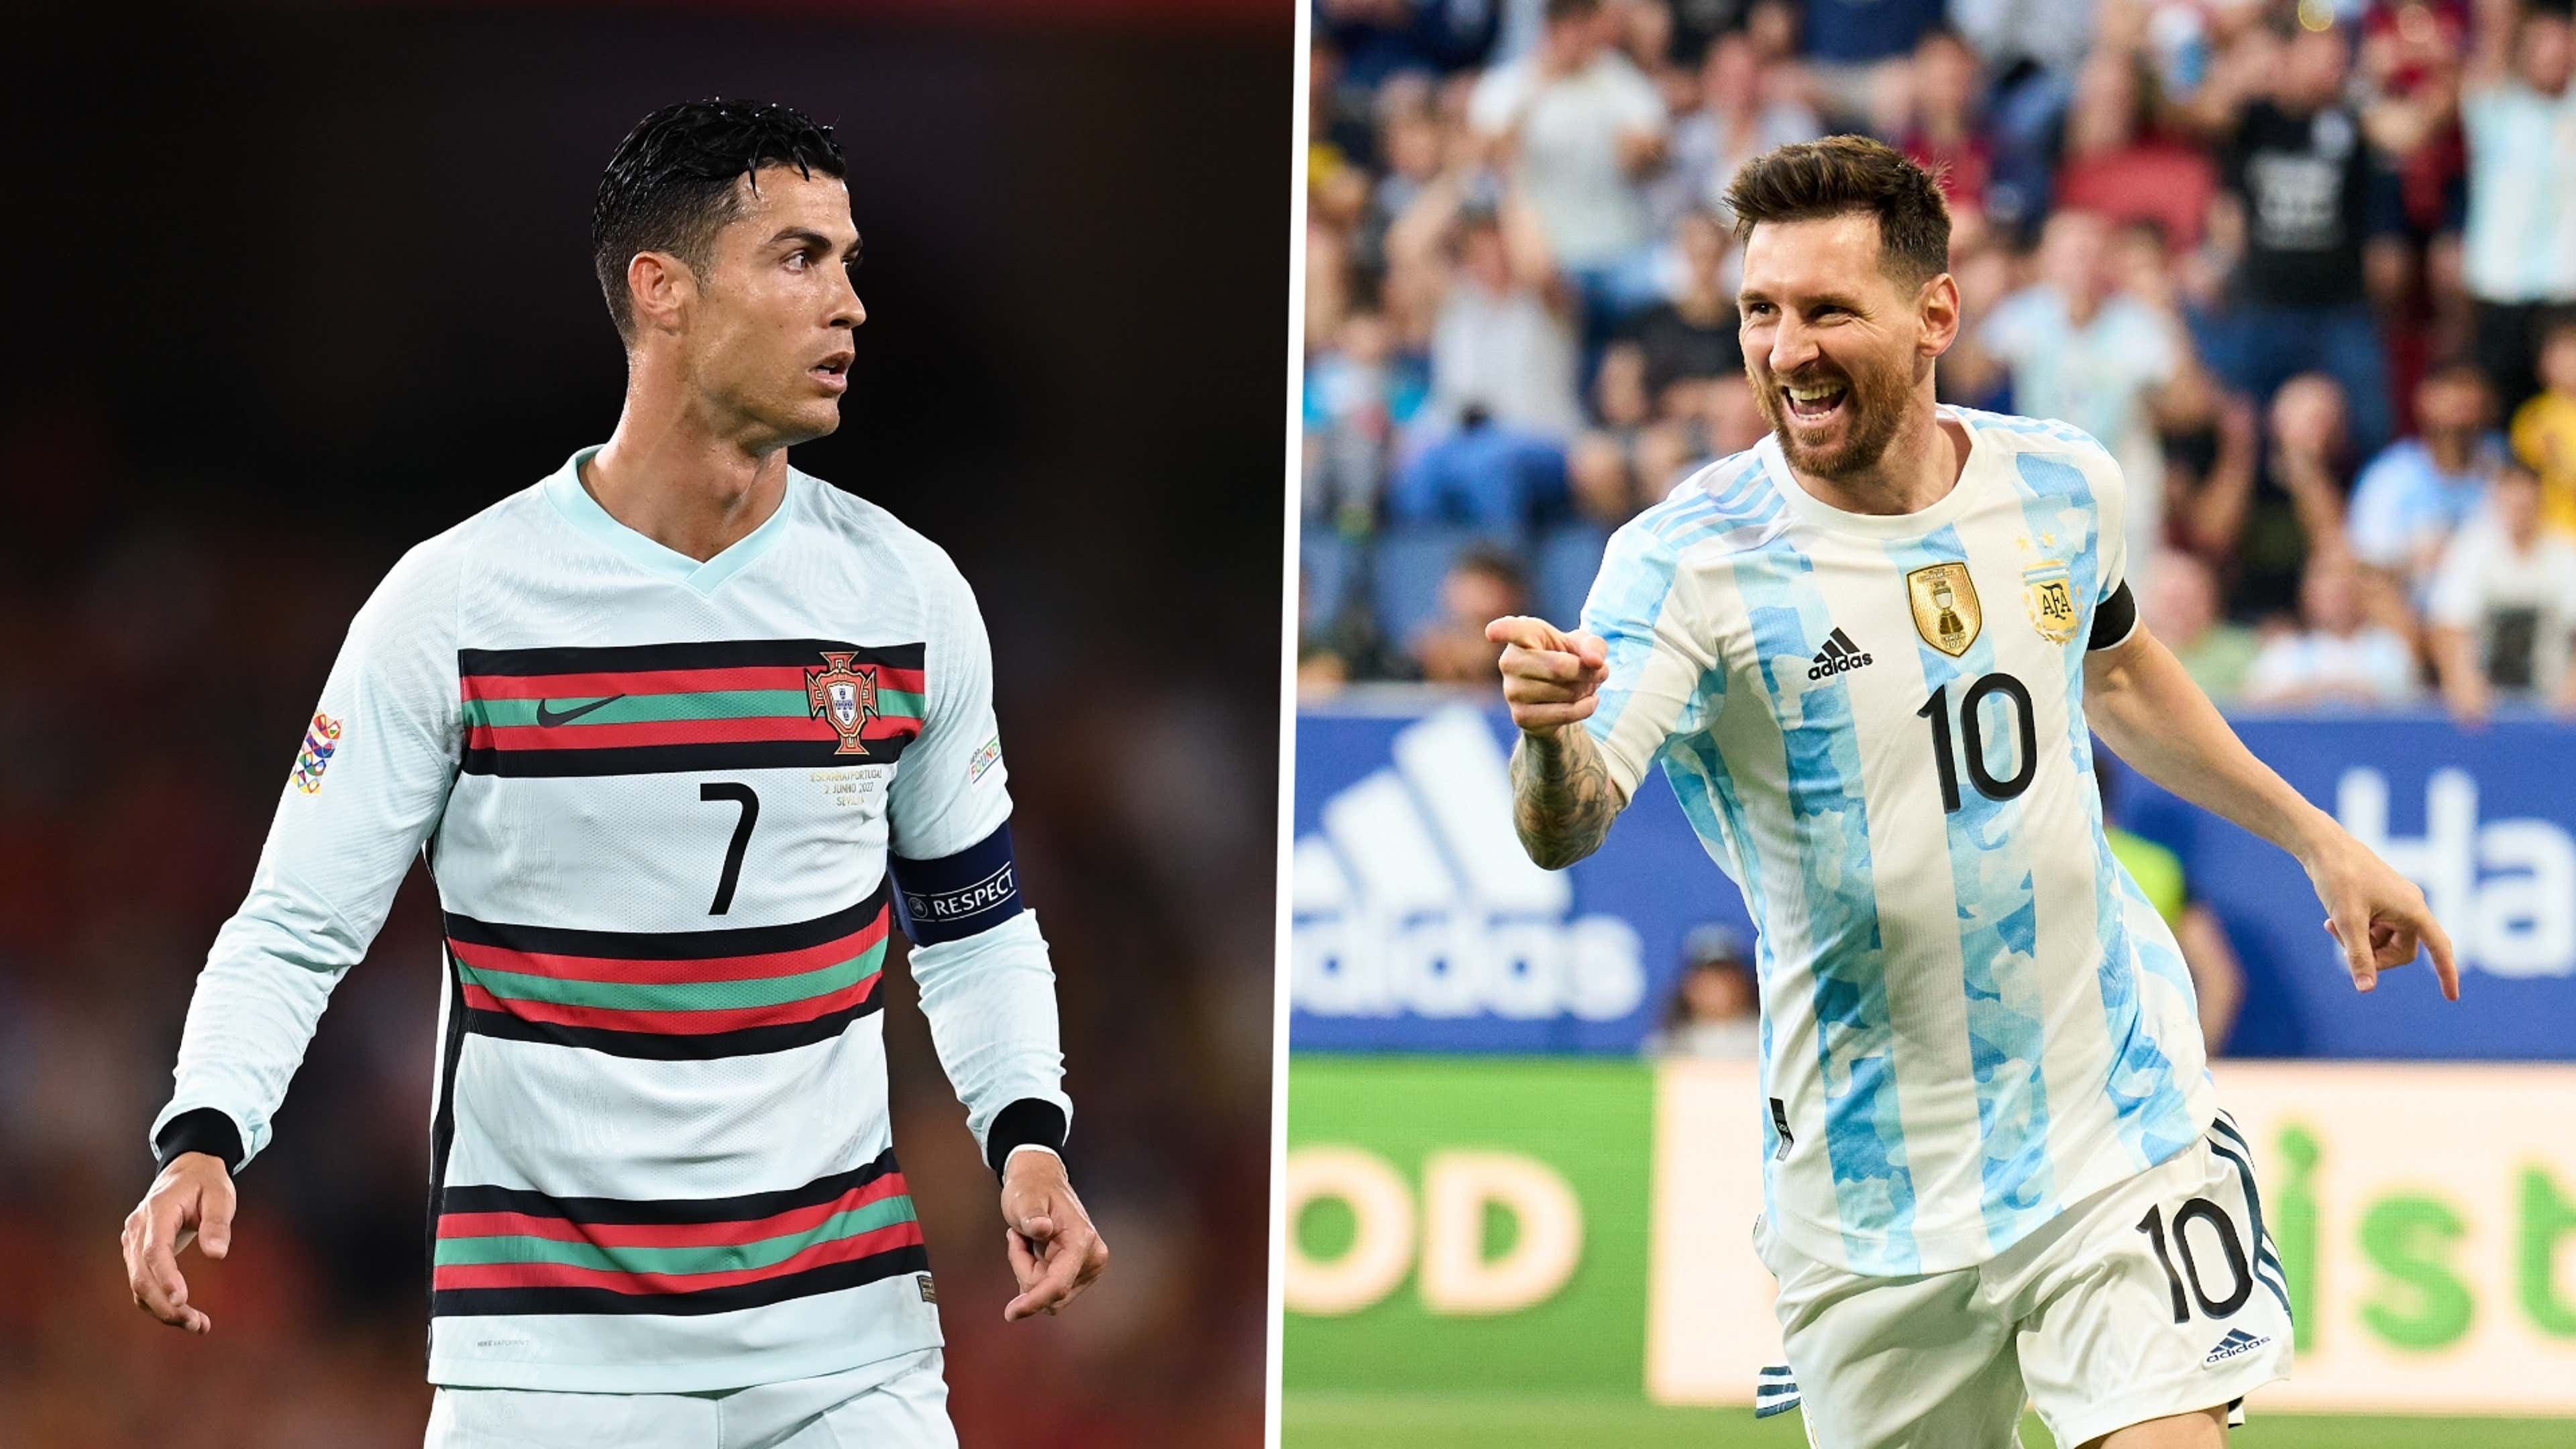 Coupe du monde : conflit avec Manchester, pub Louis Vuitton avec Messi  Ronaldo s'explique 